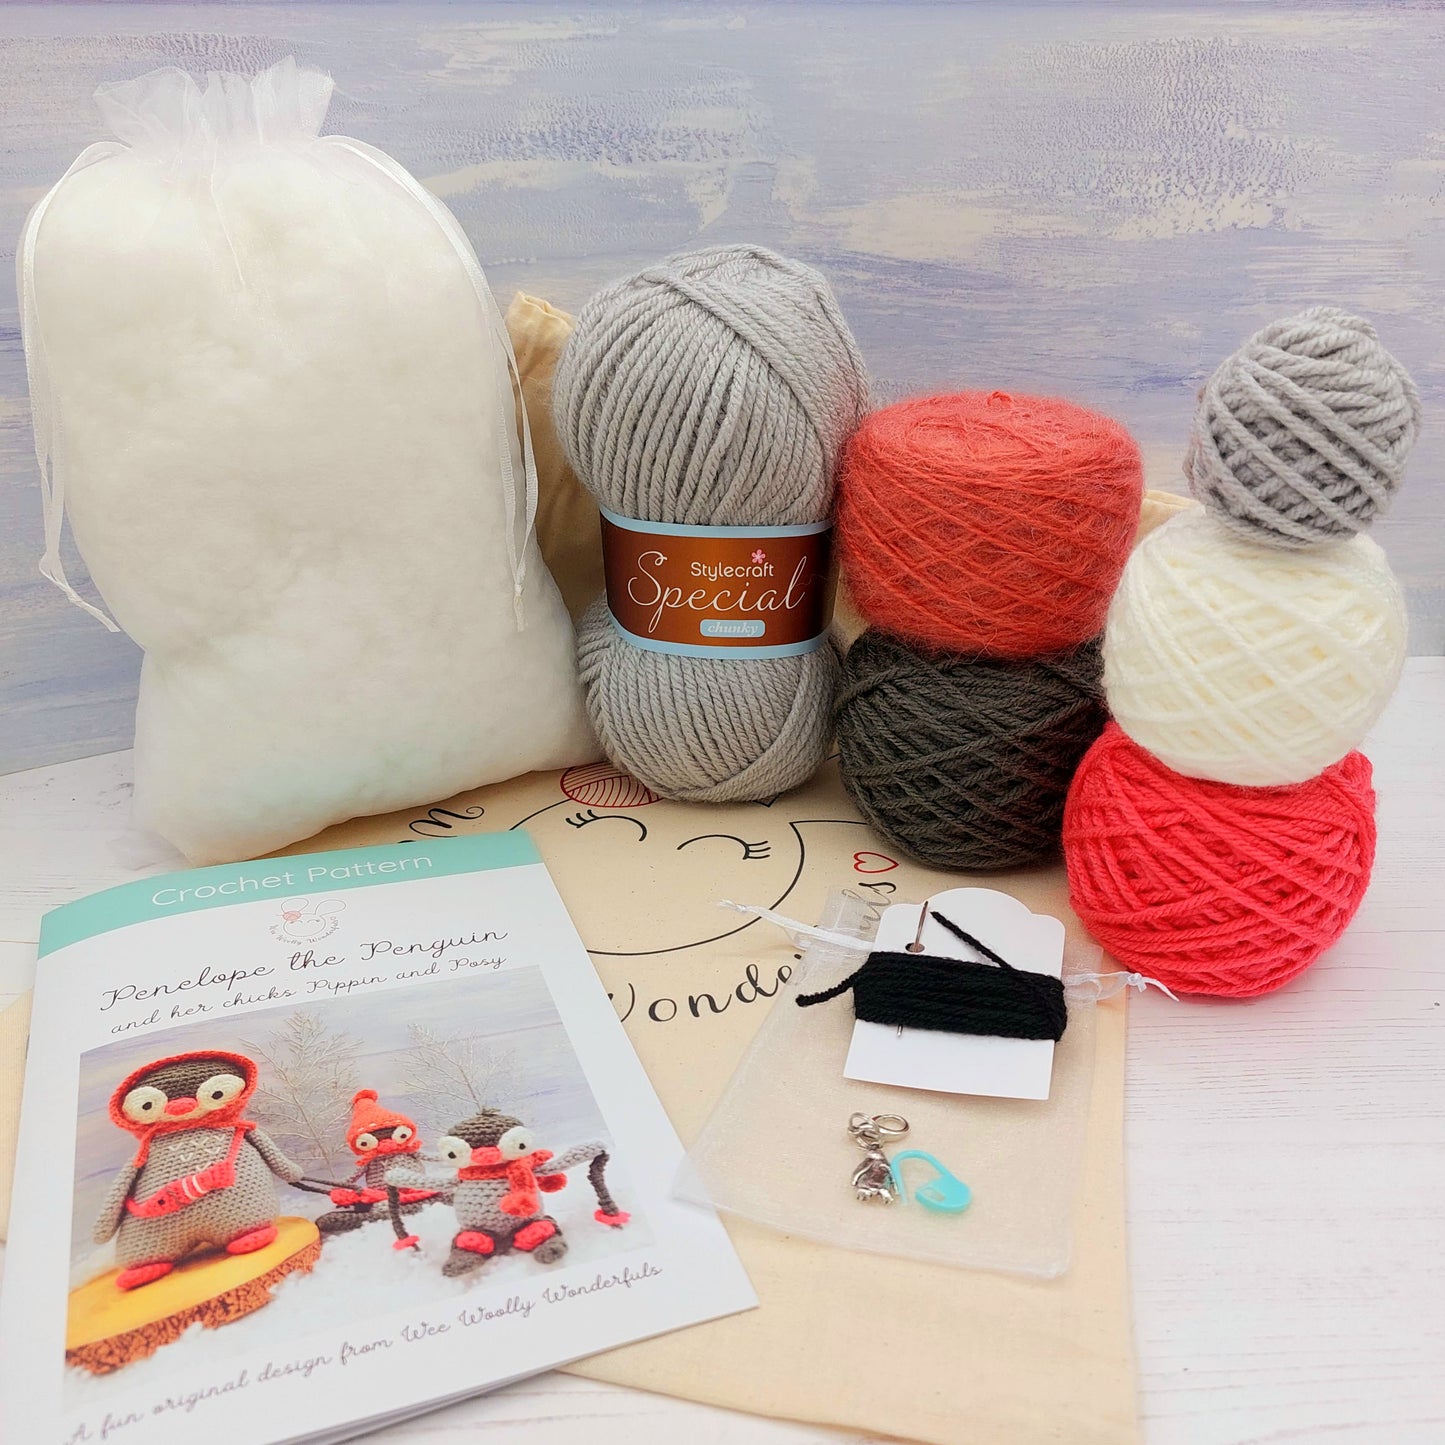 Full contents of Penguin Crochet Kit